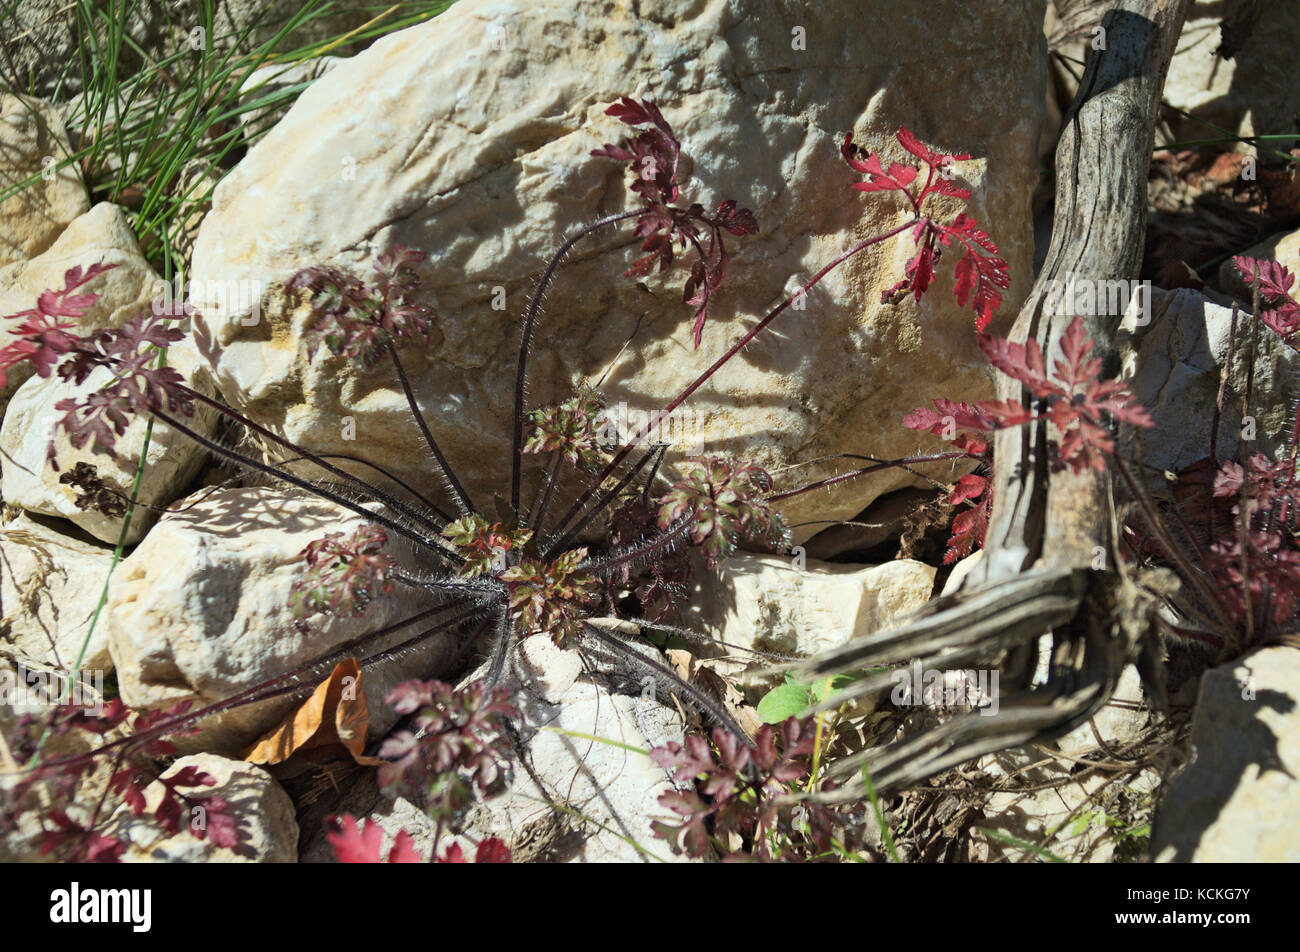 Pianta di montagna con leavs rosso e filamenti su rocce con legno morto, composizione con piante e natura morta Foto Stock